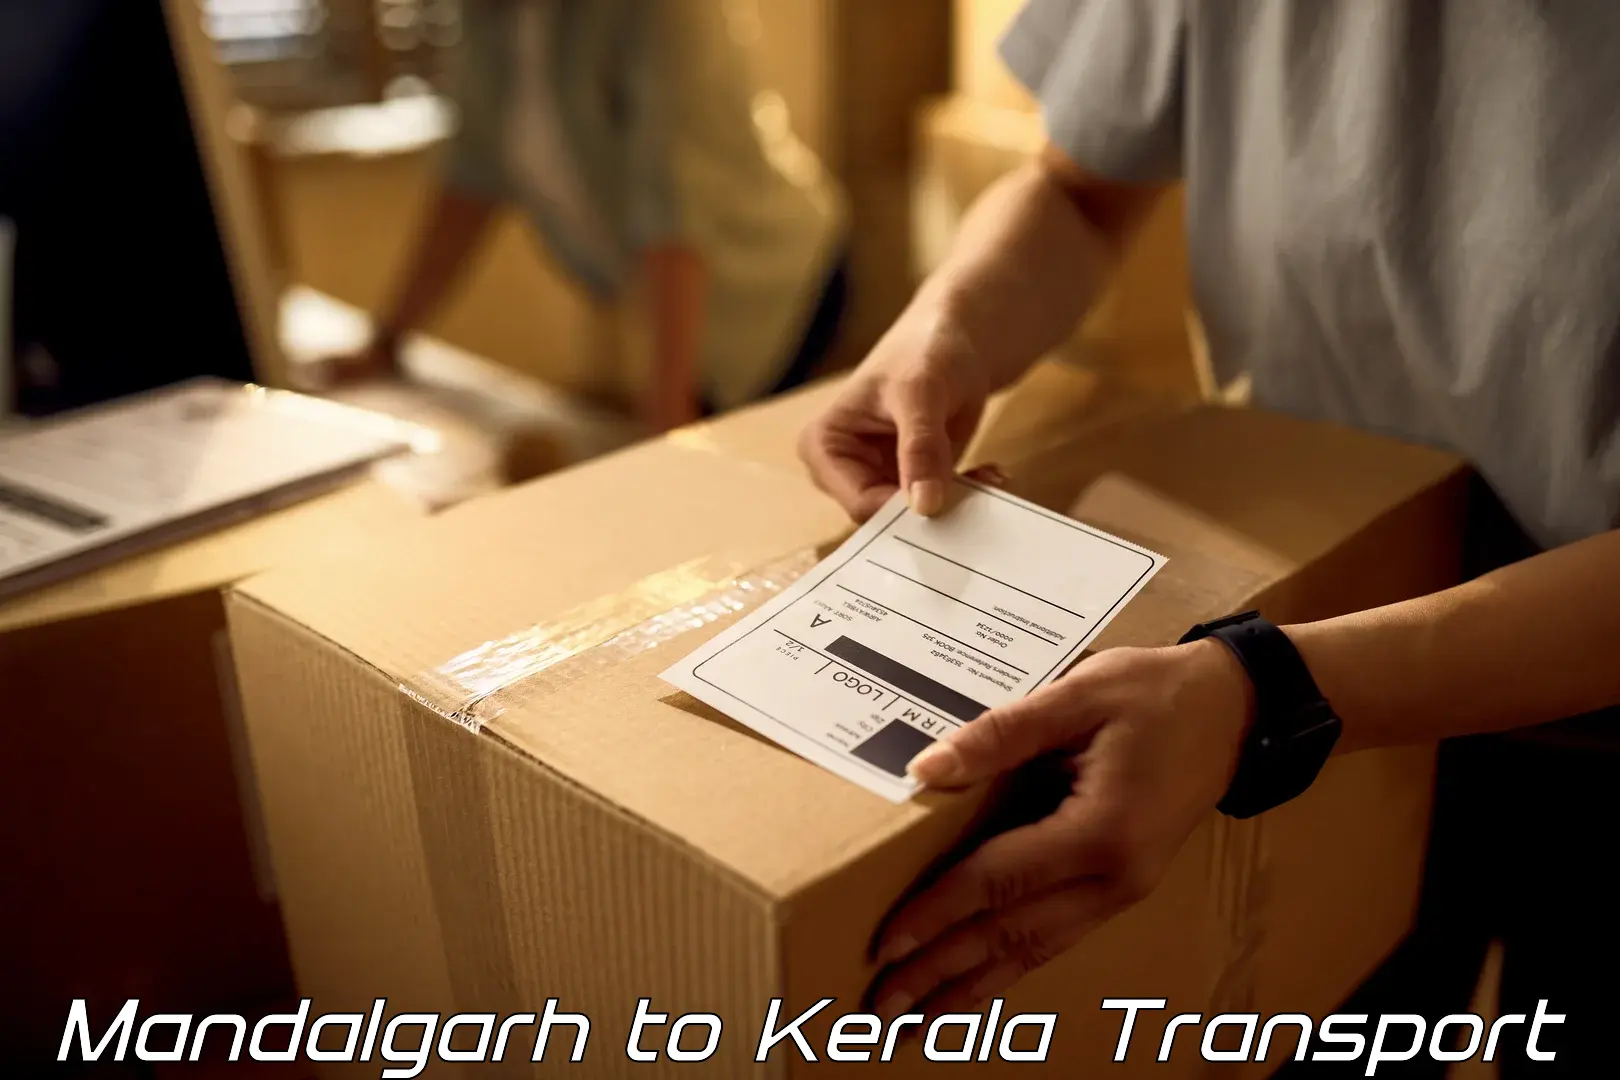 Furniture transport service Mandalgarh to Parappa